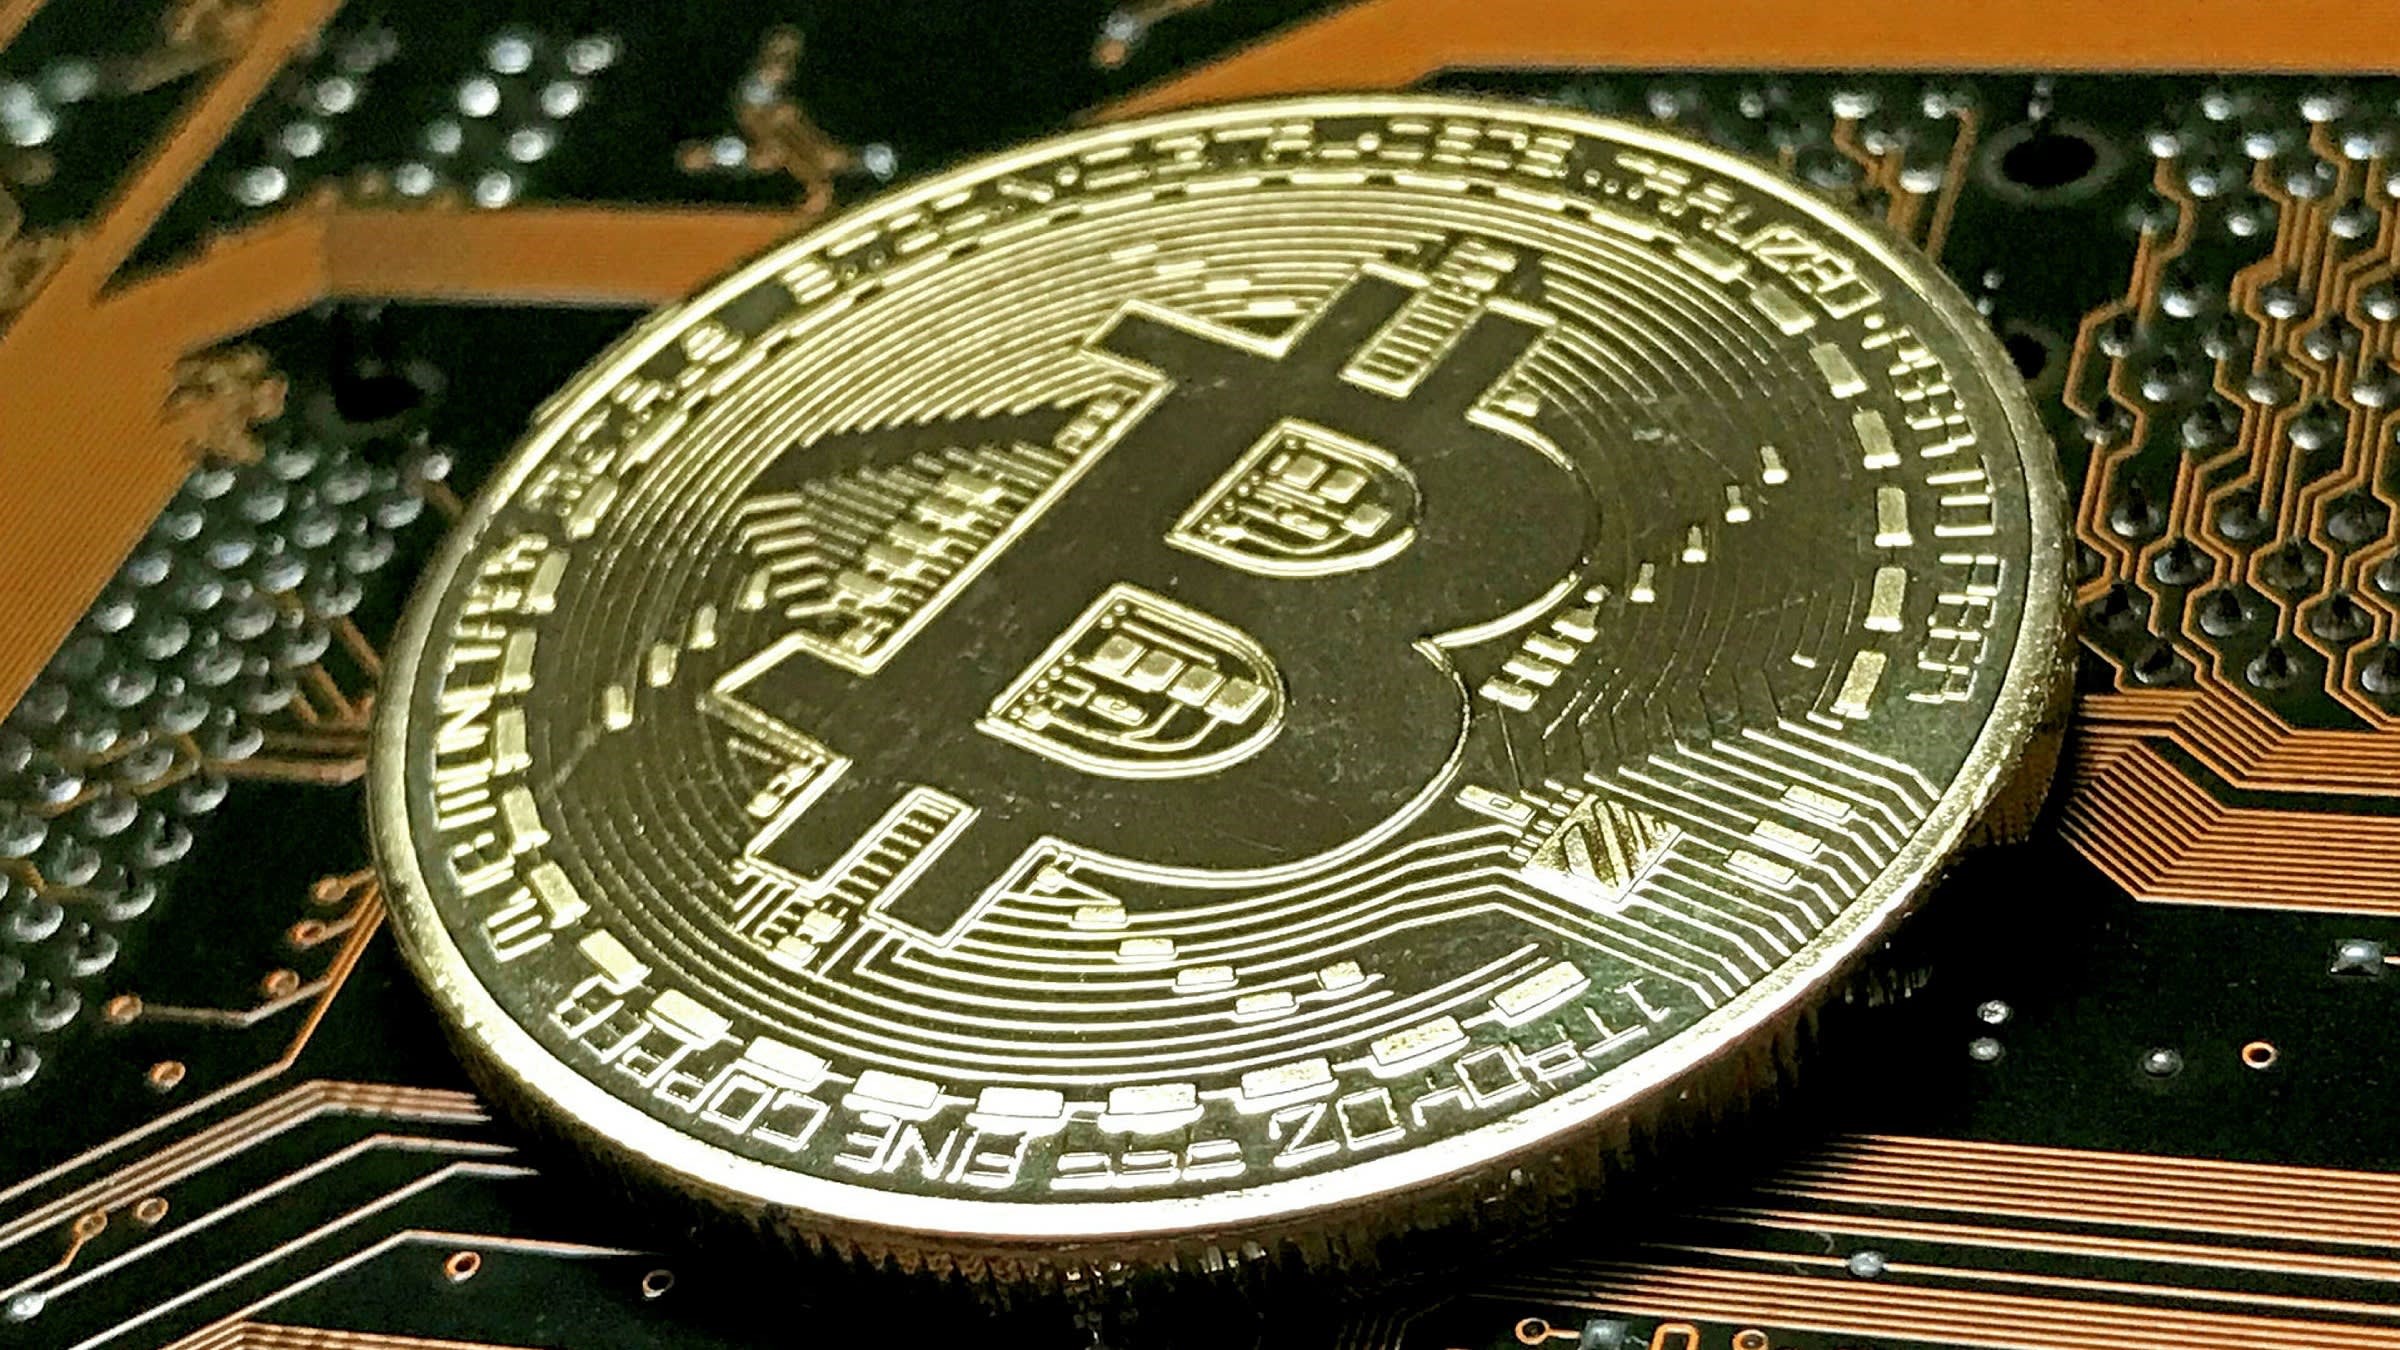 Fond för Bitcoin når förvaltad volym på 100 MUSD på mindre än fem månader